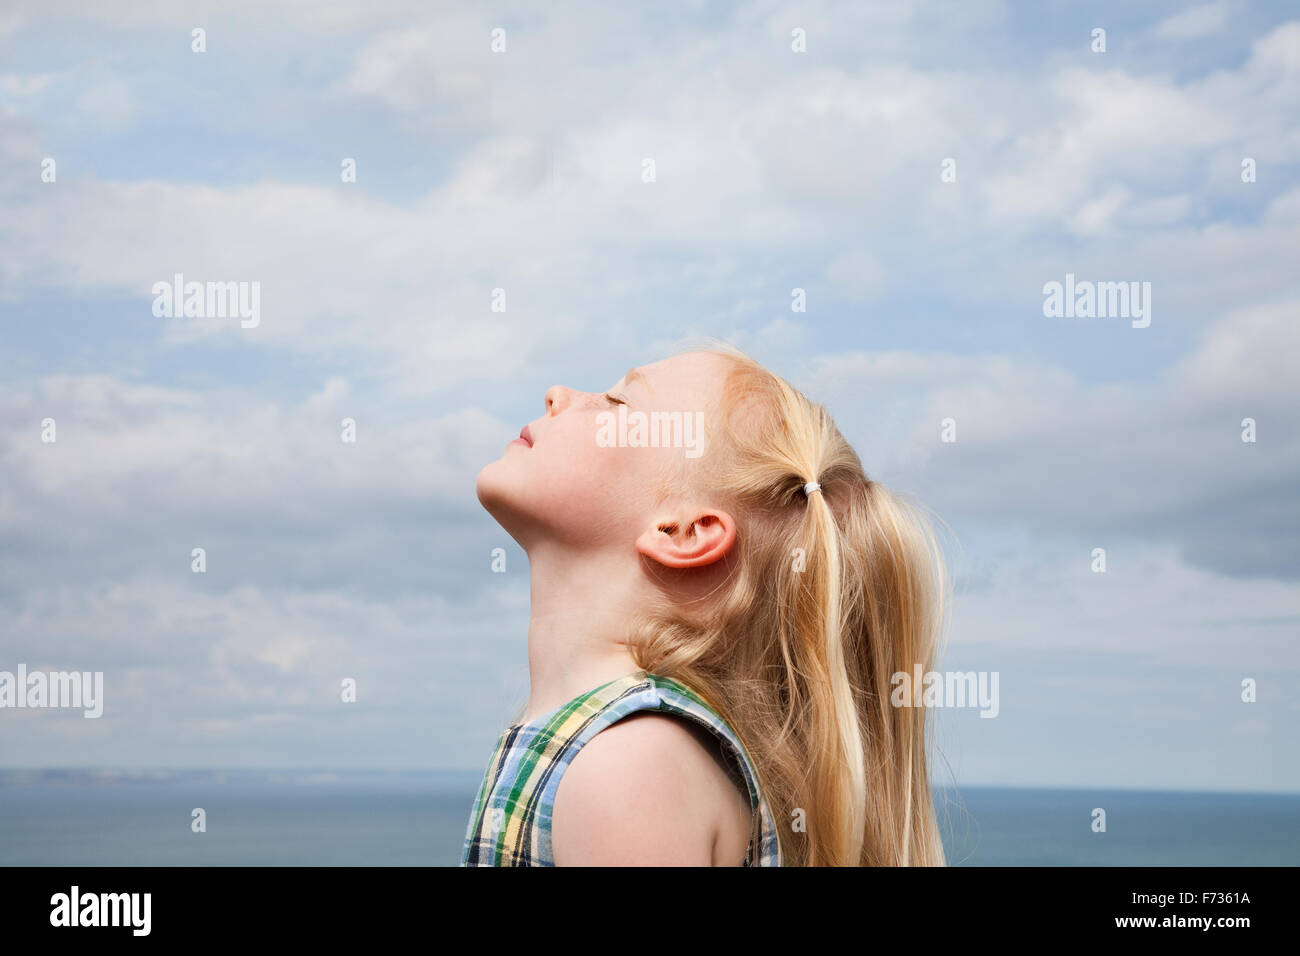 Ein junges Mädchen ihr Gesicht der Sonne zu erhöhen. Stockfoto